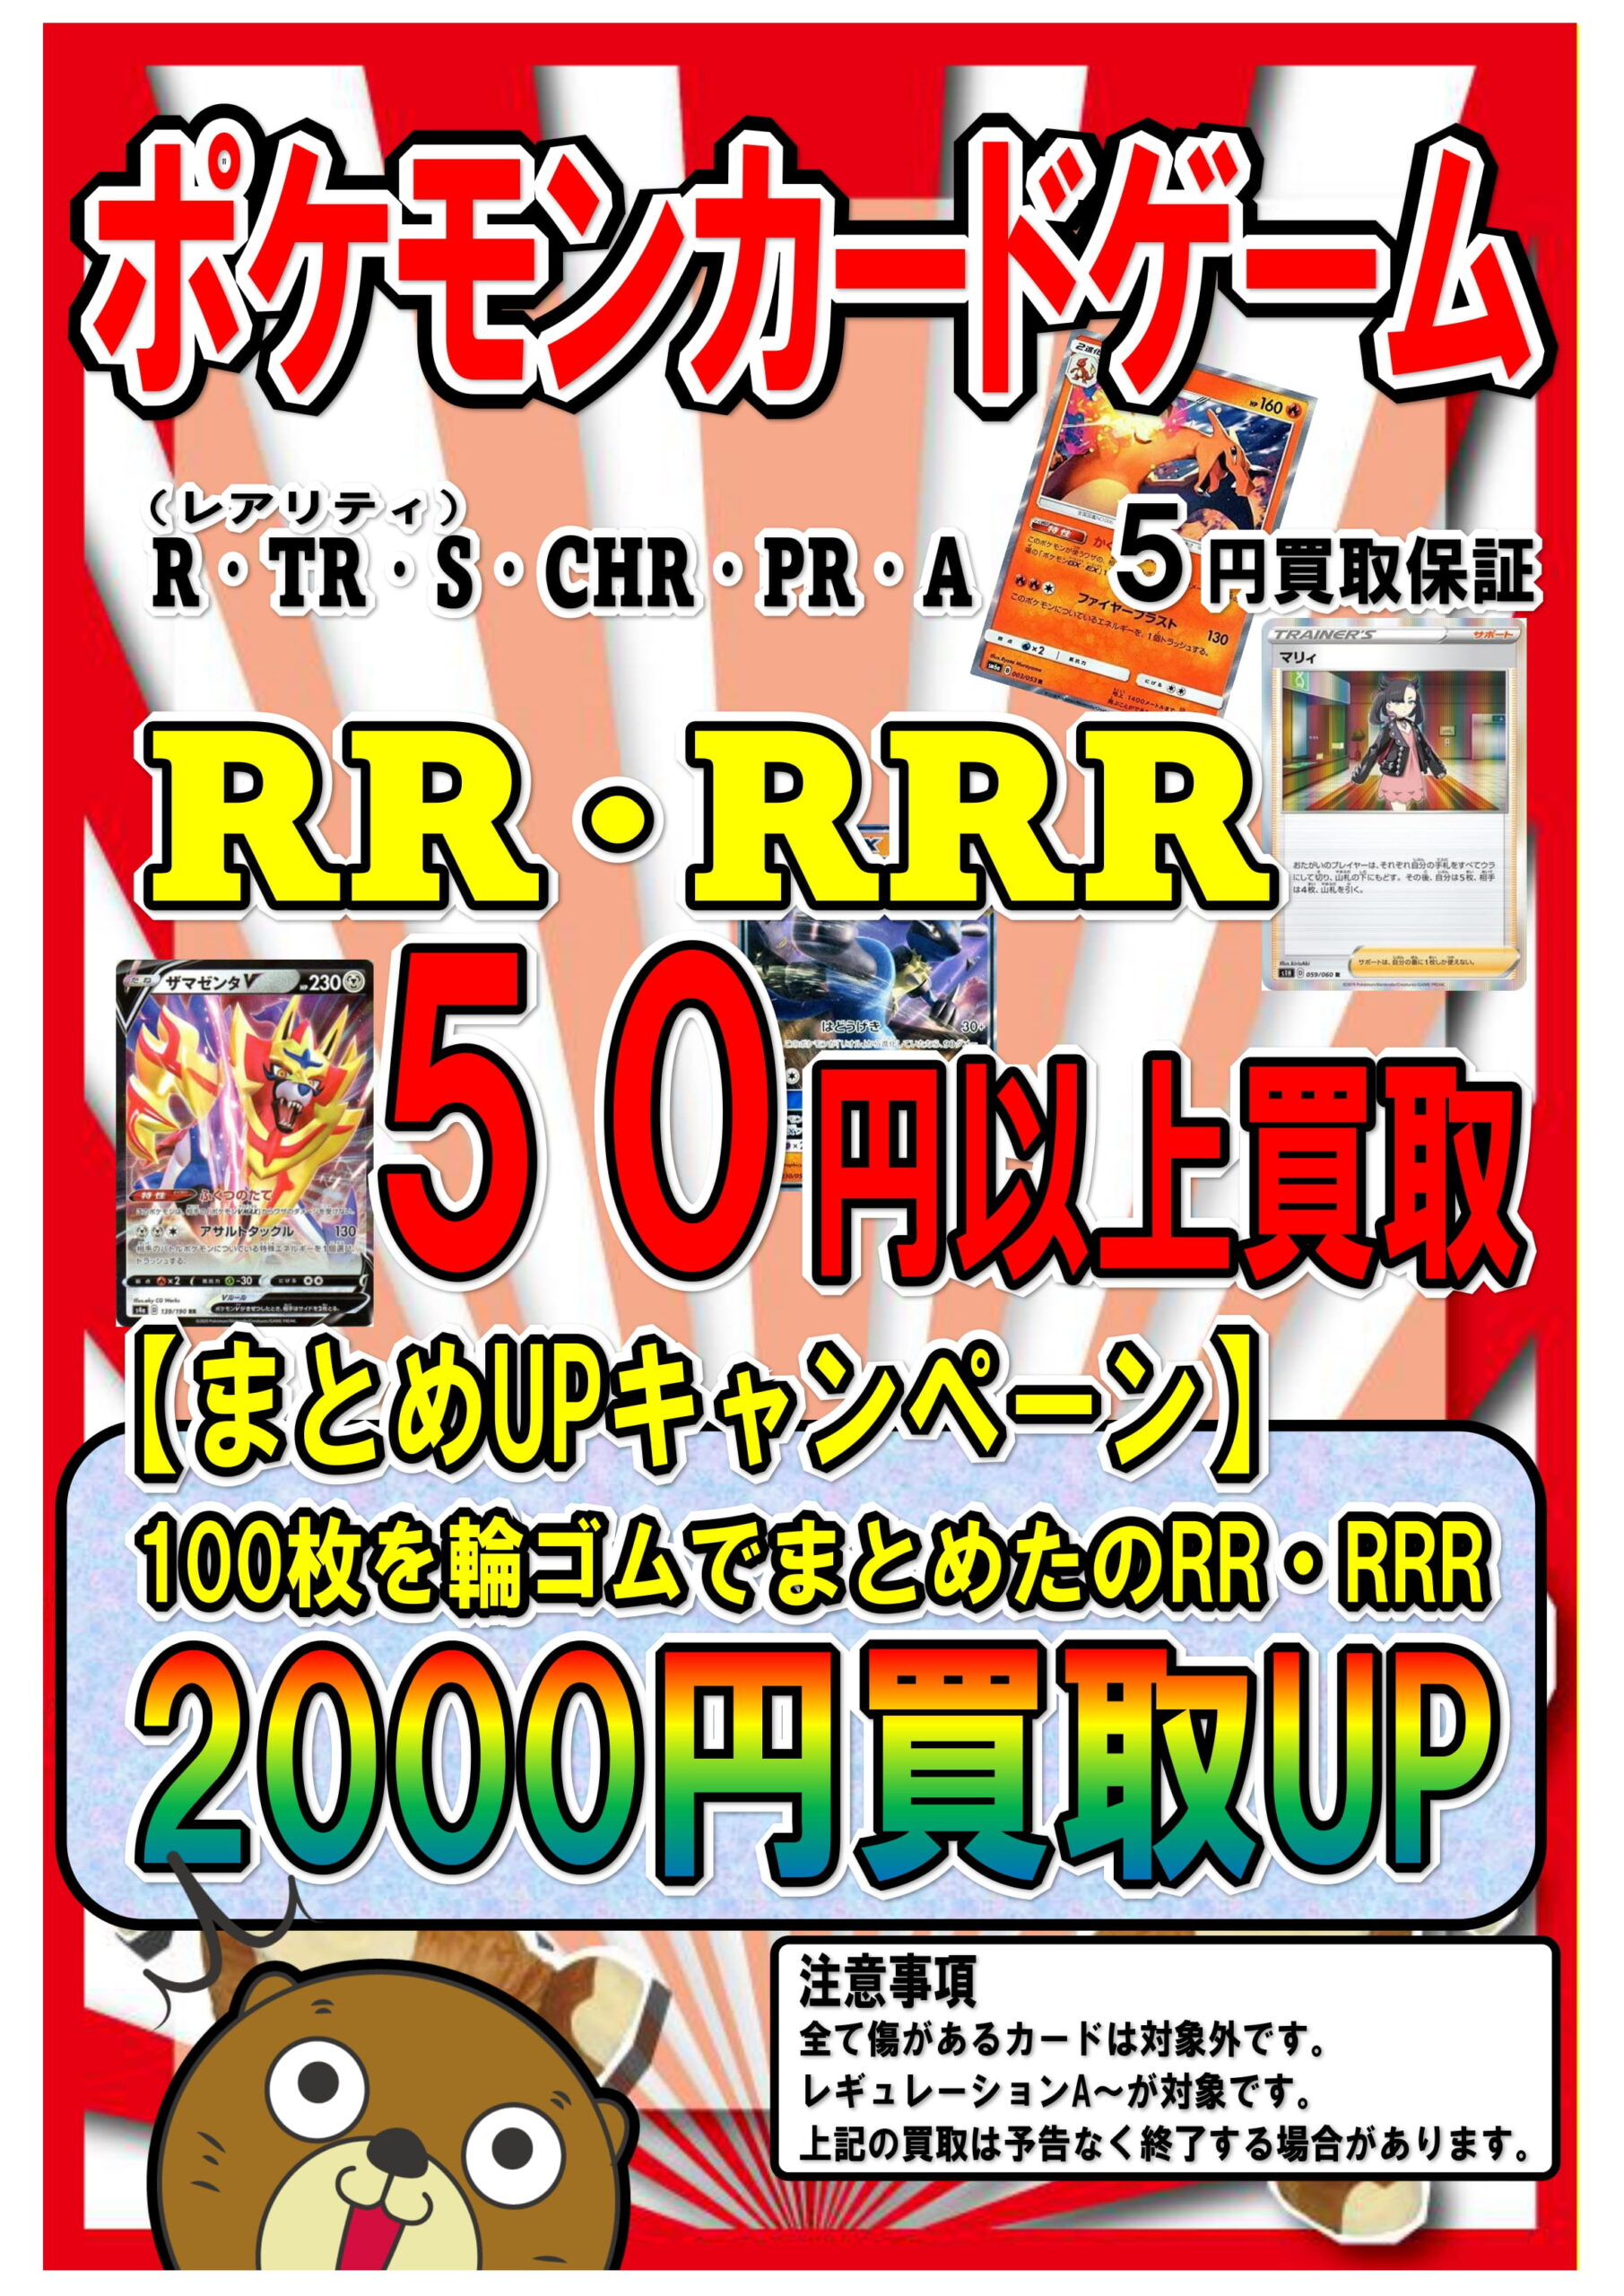 ポケカRR RRR まとめ売り 引退品 - ポケモンカードゲーム